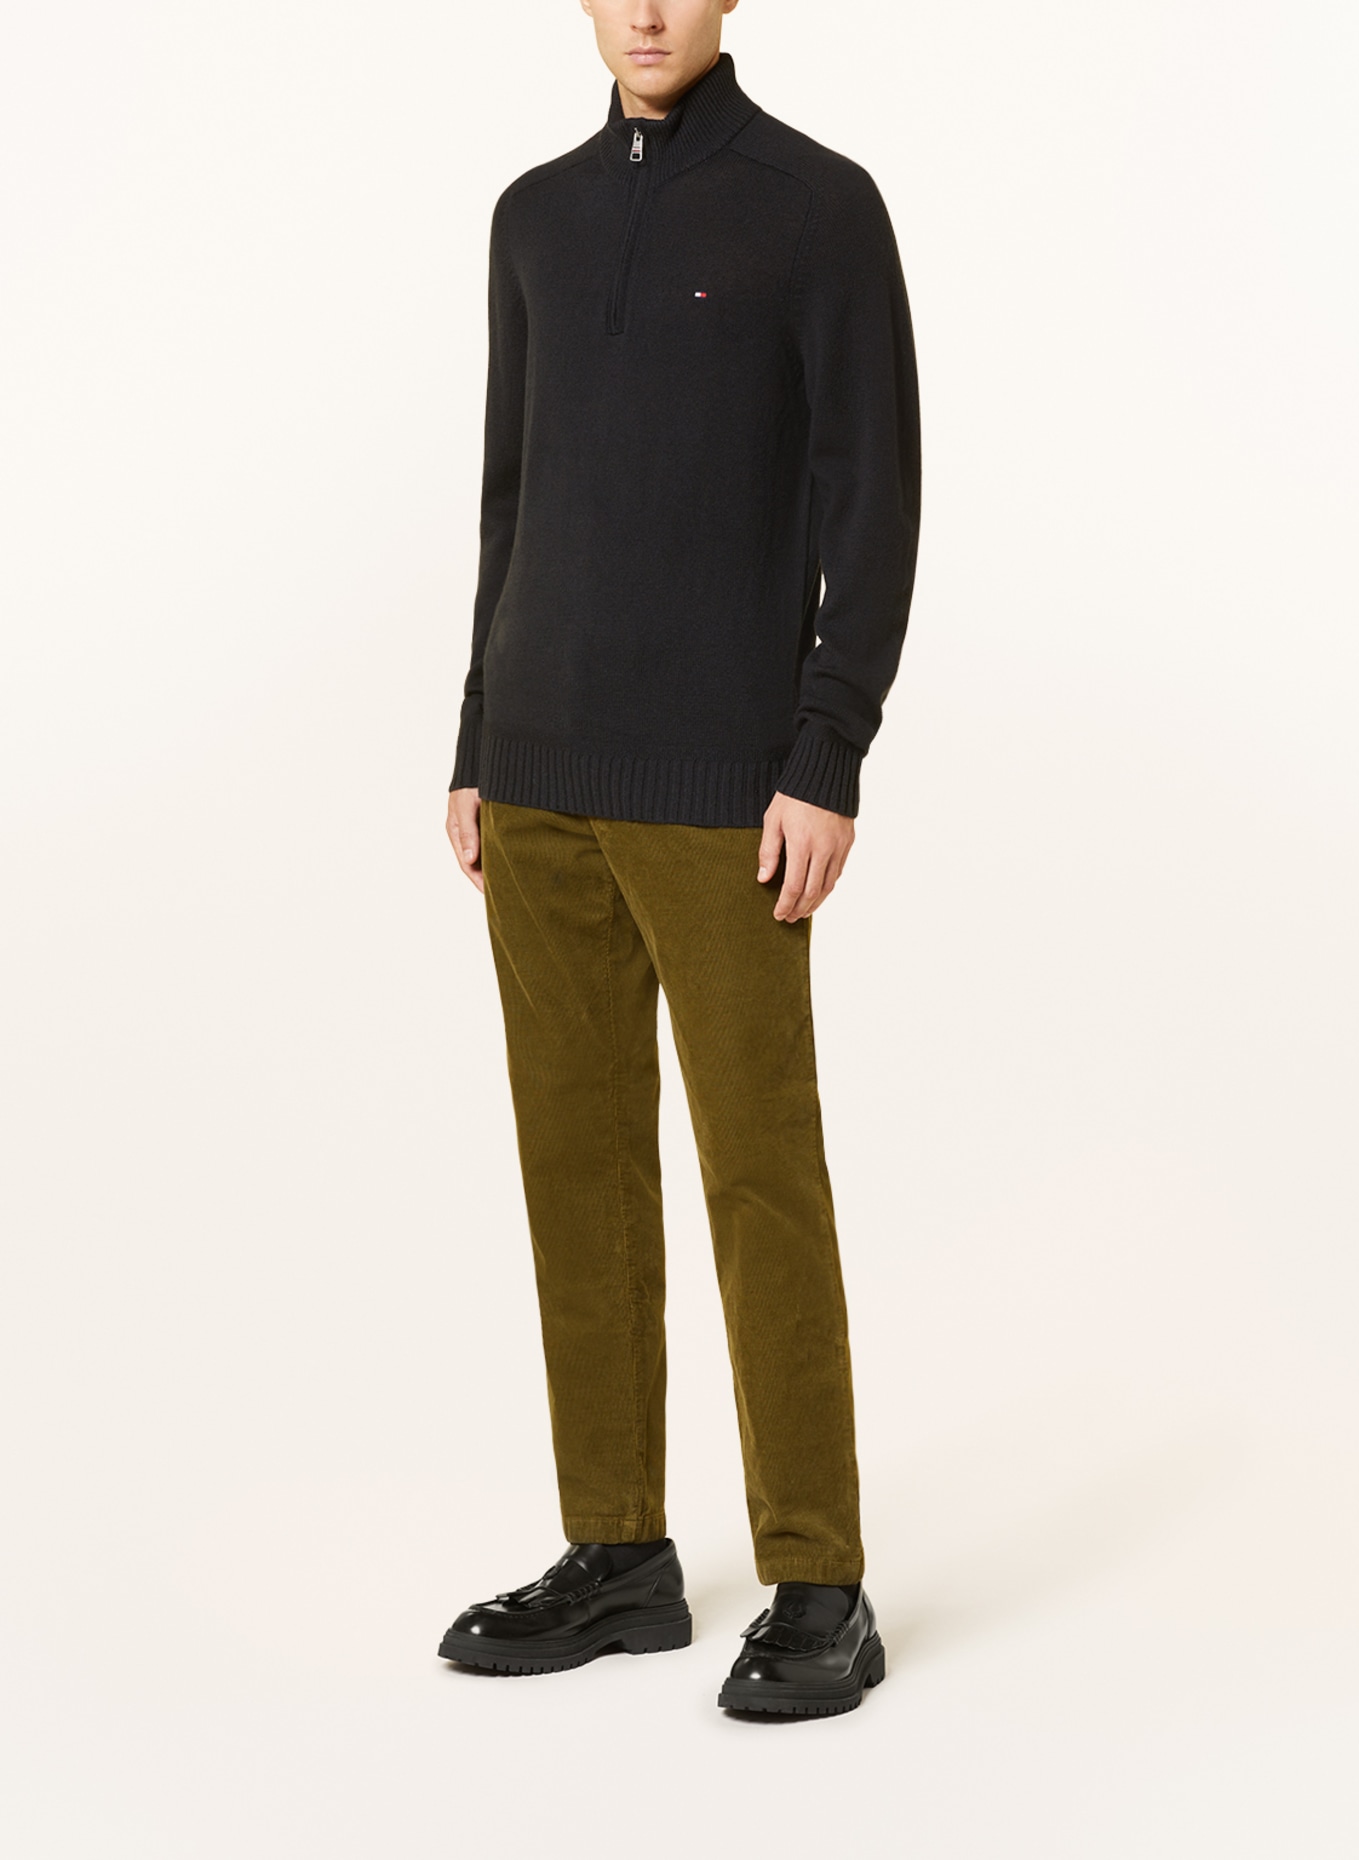 TOMMY HILFIGER Half-zip sweater, Color: BLACK (Image 2)